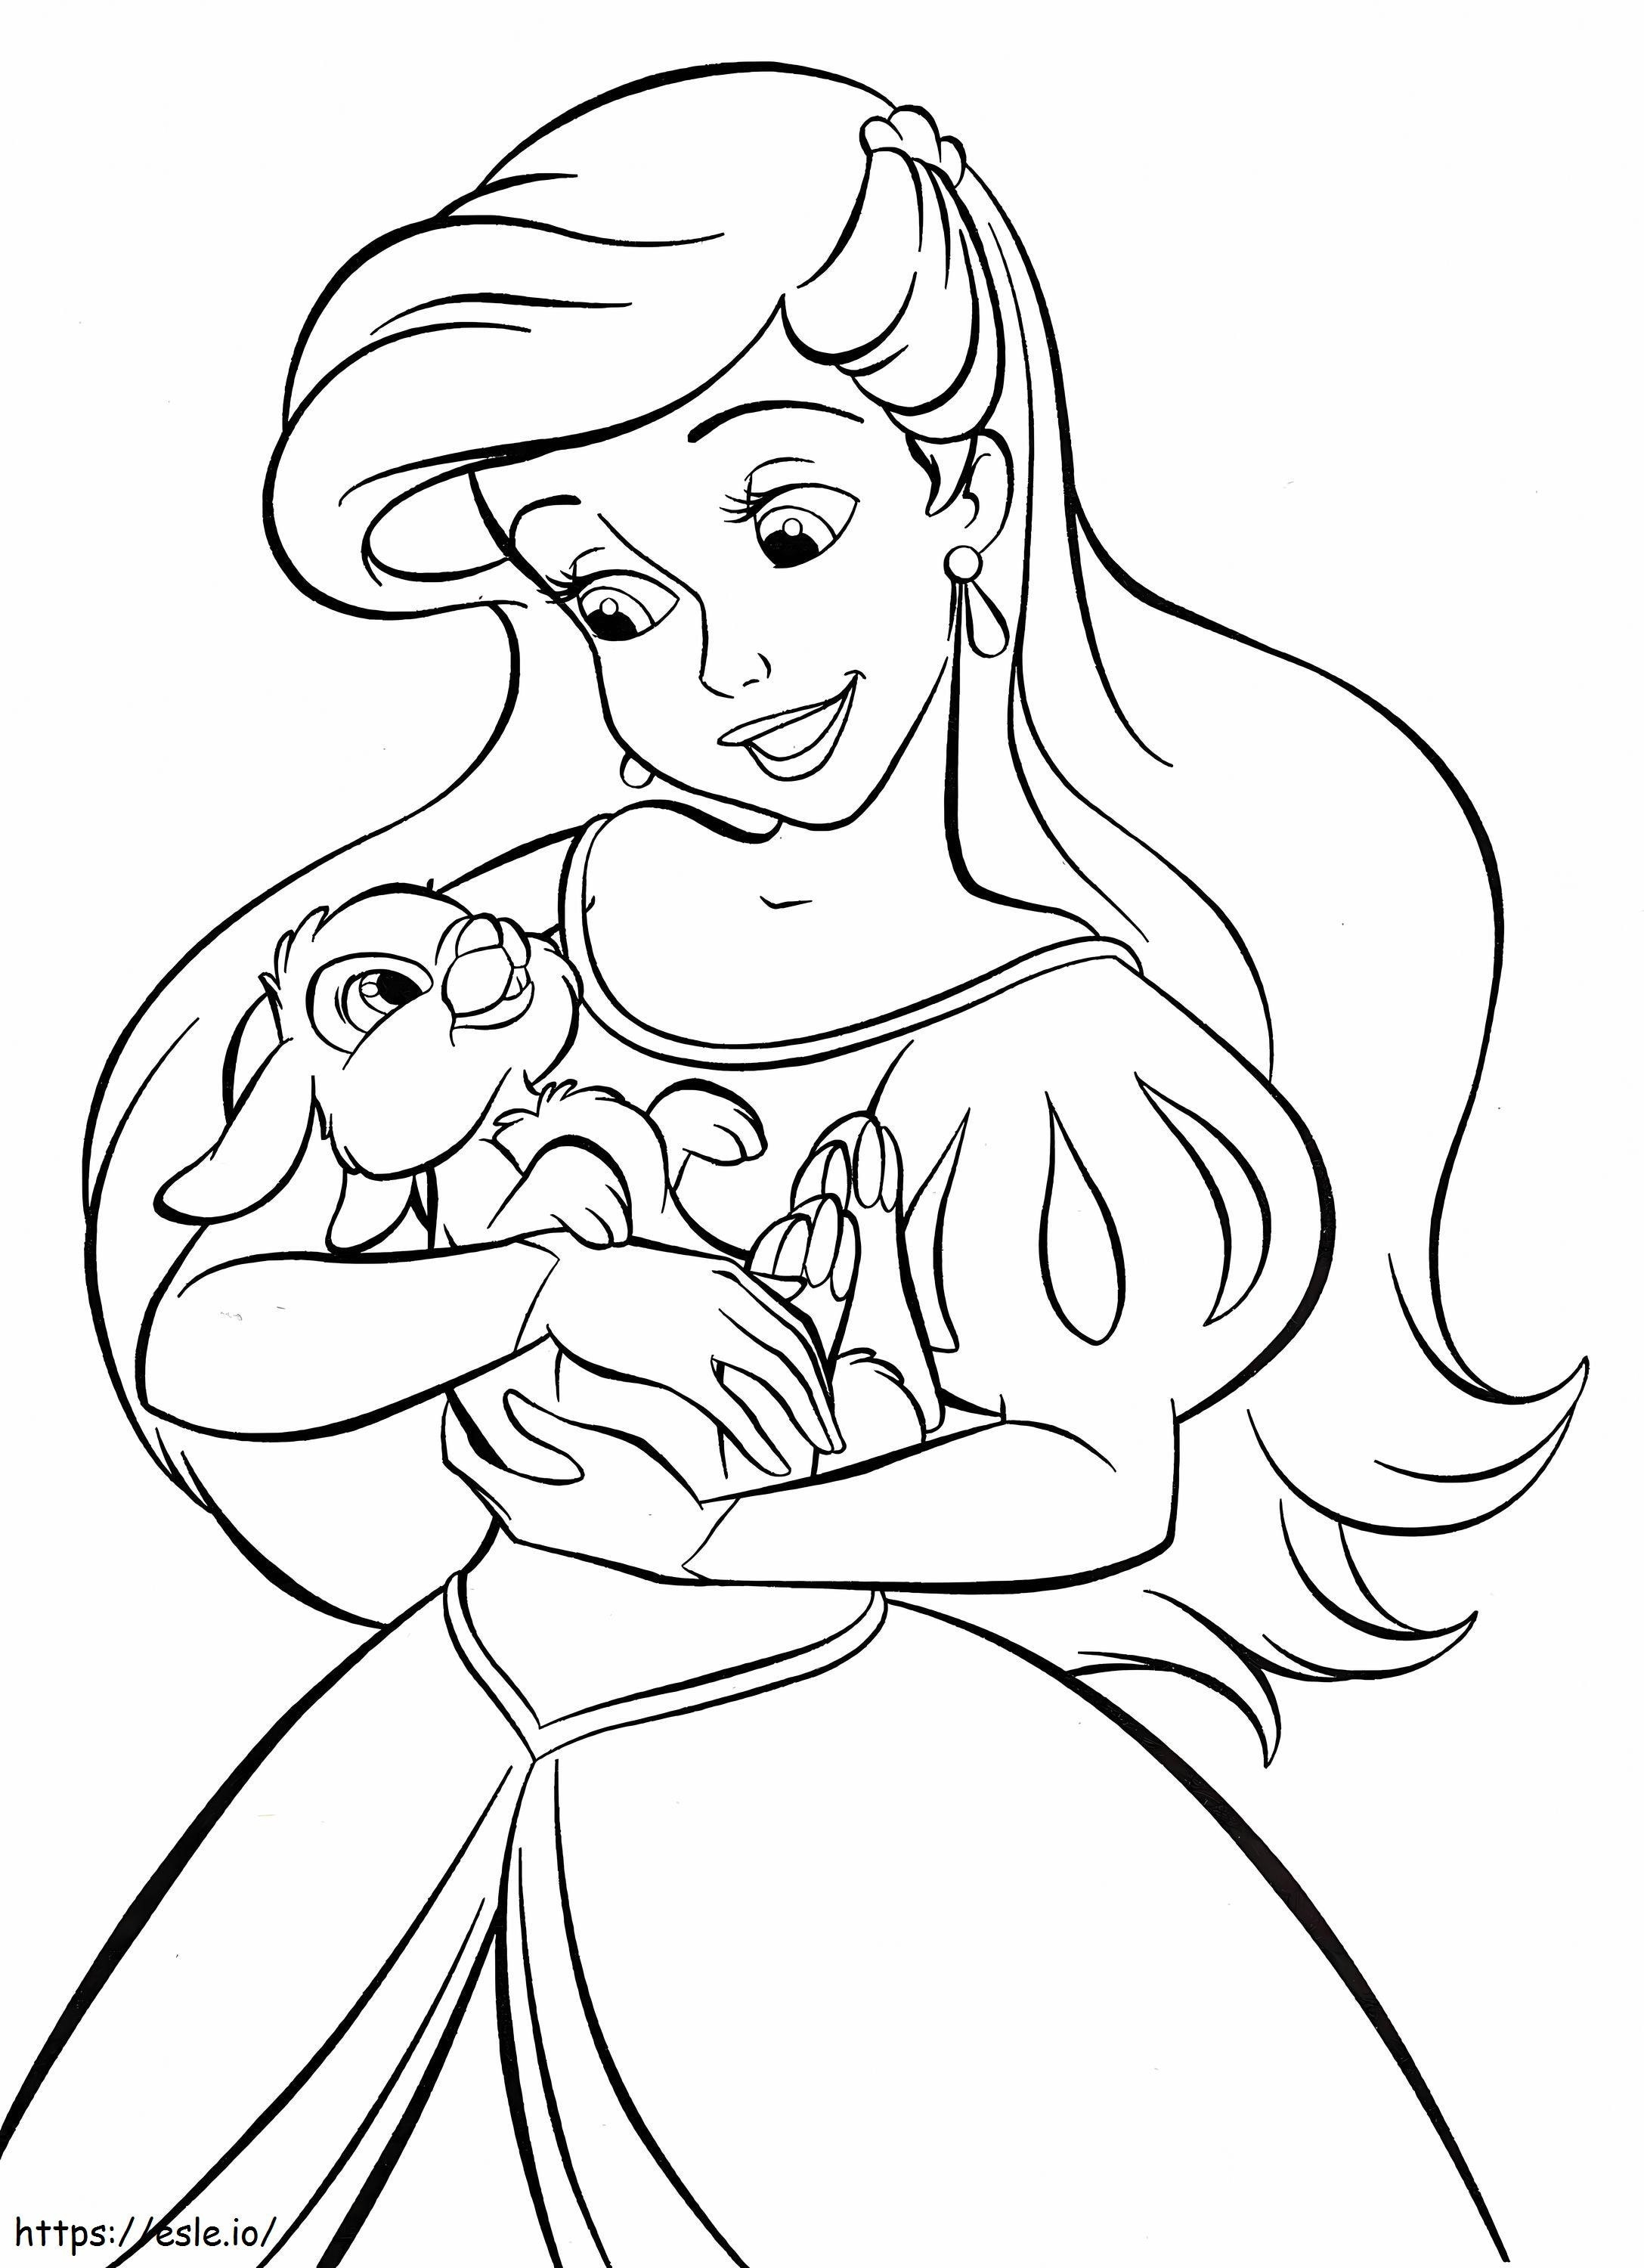 Disney Princess Ariel With Bunny coloring page